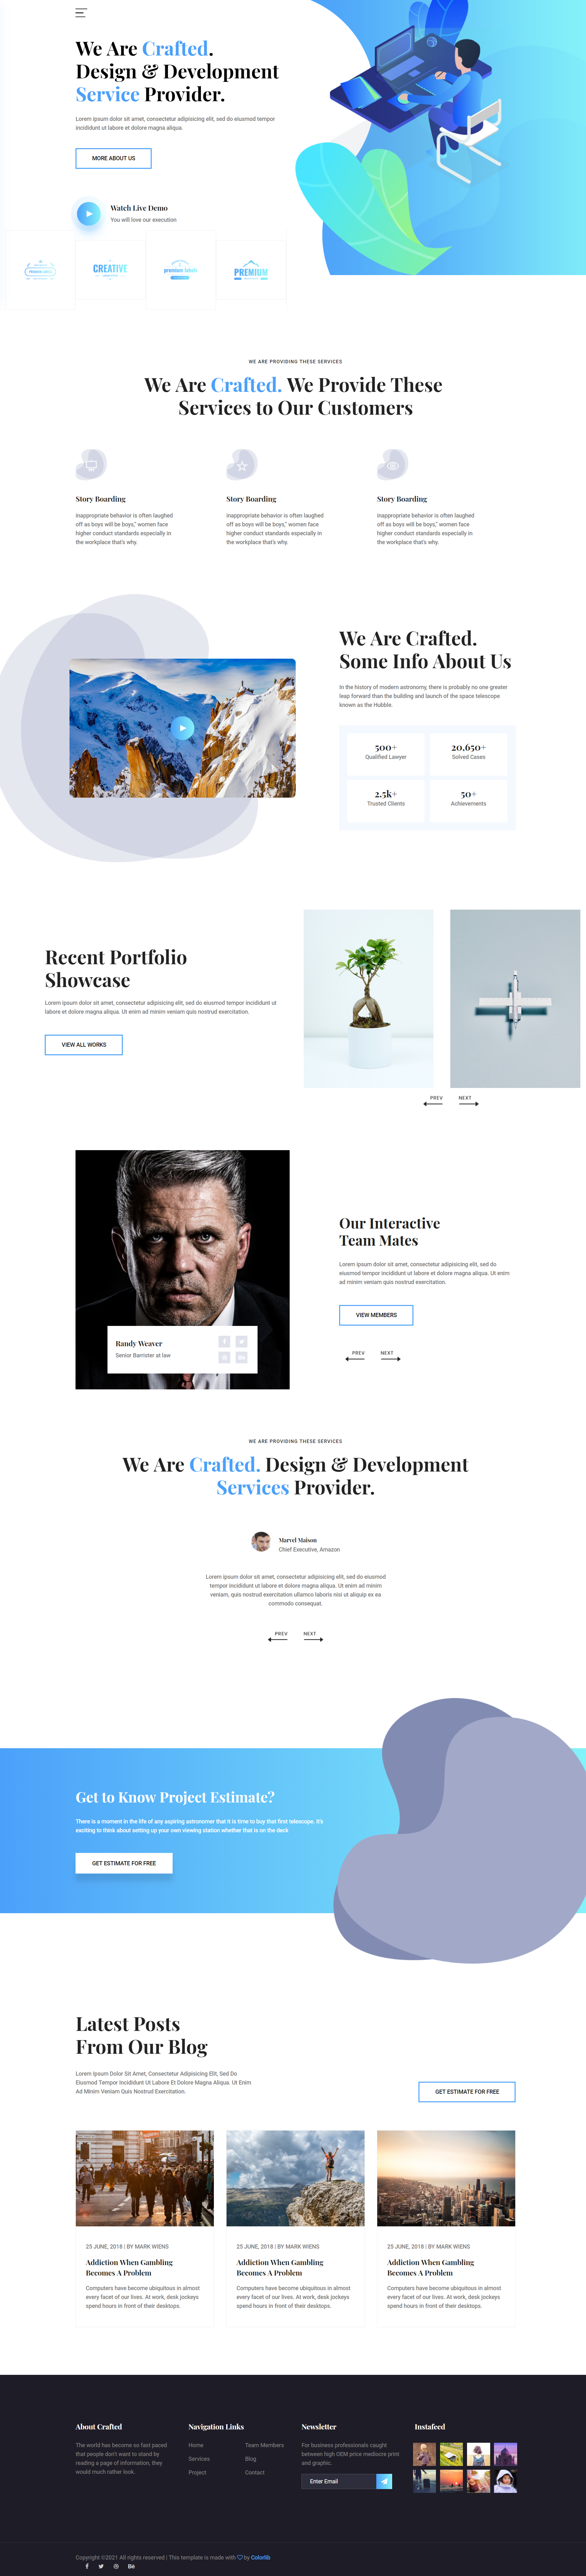 蓝色简洁风格响应式精制设计公司企业网站模板